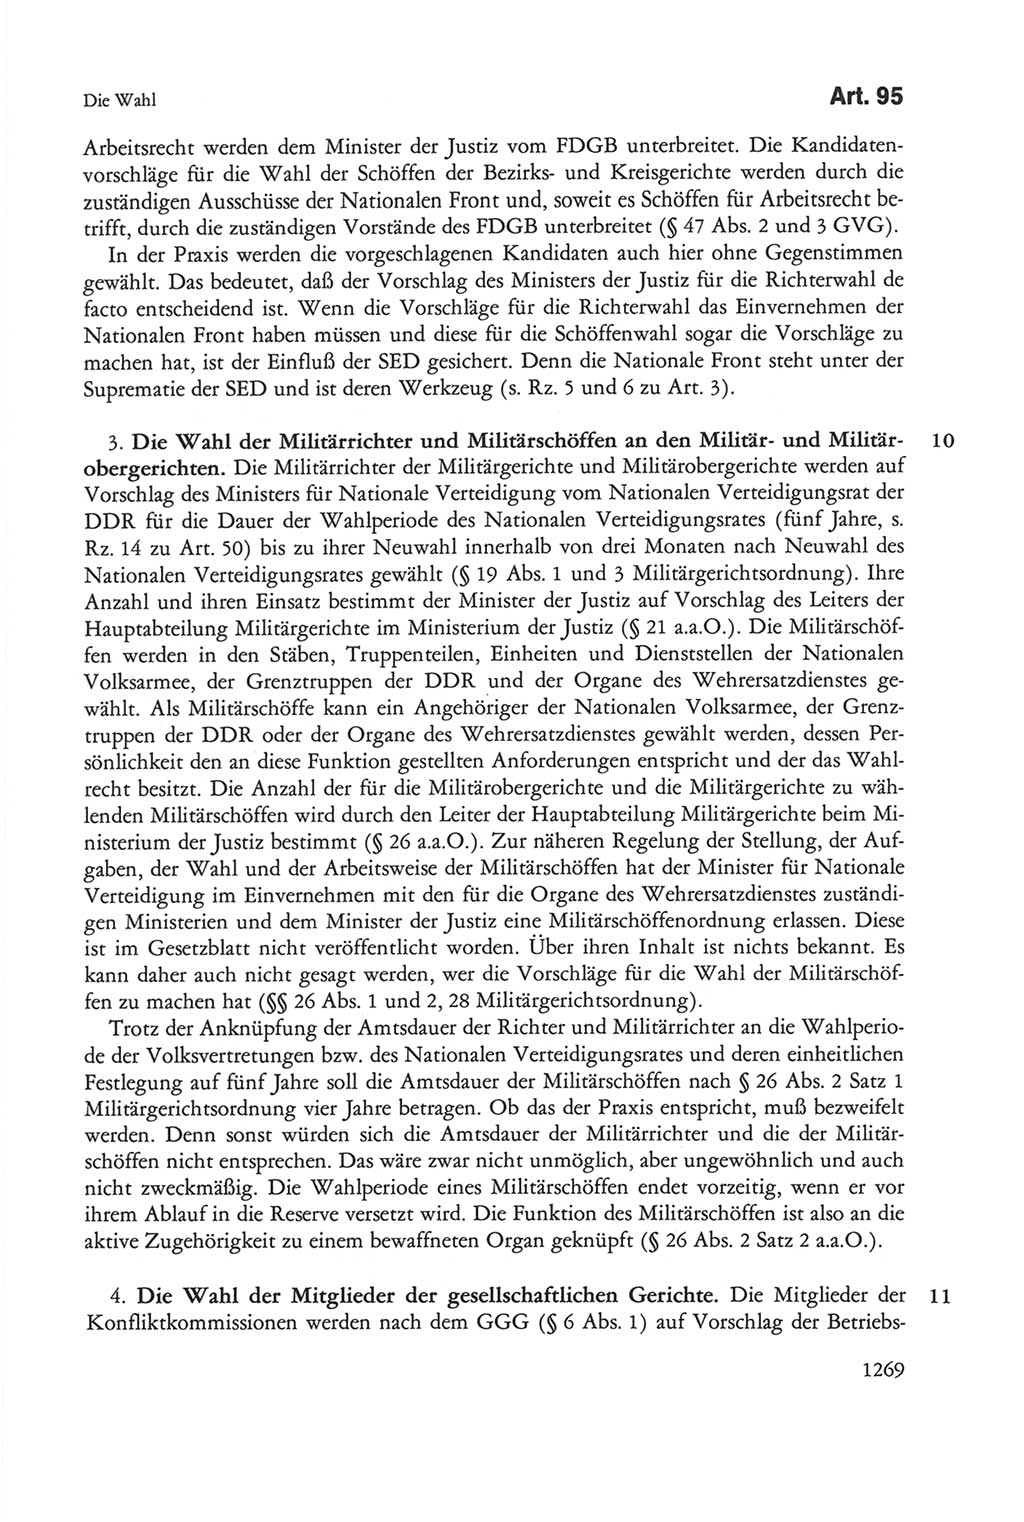 Die sozialistische Verfassung der Deutschen Demokratischen Republik (DDR), Kommentar mit einem Nachtrag 1997, Seite 1269 (Soz. Verf. DDR Komm. Nachtr. 1997, S. 1269)